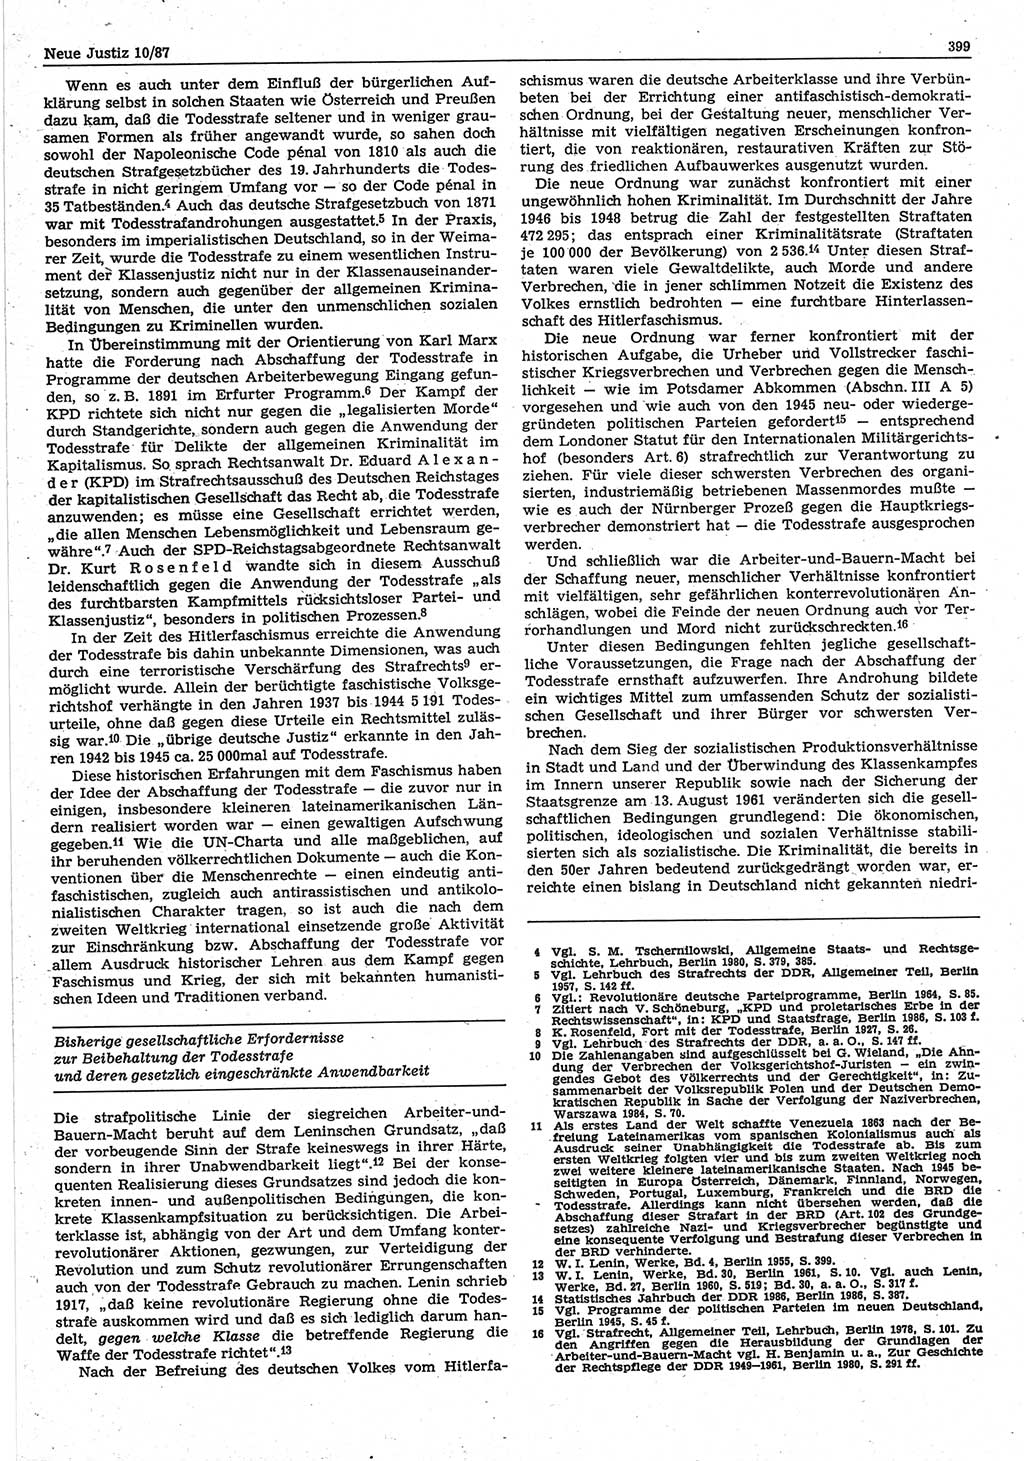 Neue Justiz (NJ), Zeitschrift für sozialistisches Recht und Gesetzlichkeit [Deutsche Demokratische Republik (DDR)], 41. Jahrgang 1987, Seite 399 (NJ DDR 1987, S. 399)